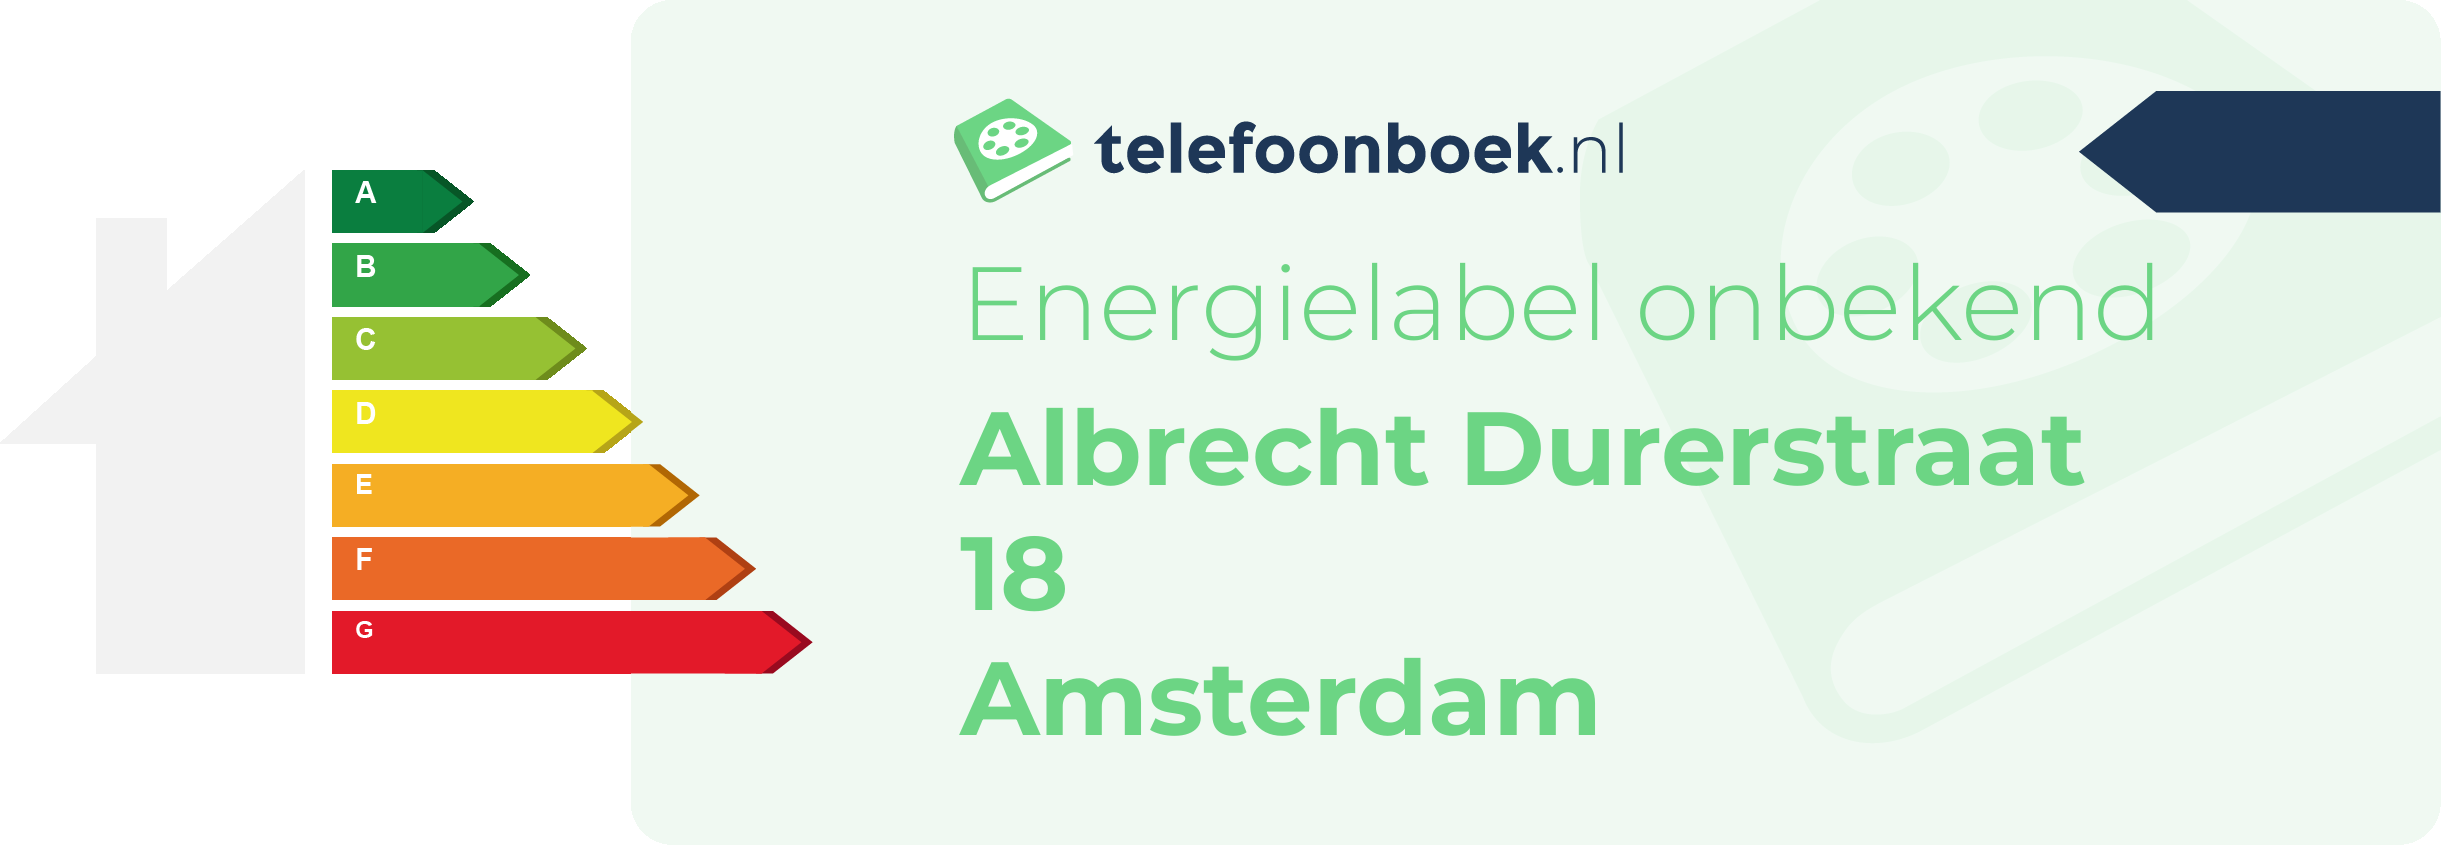 Energielabel Albrecht Durerstraat 18 Amsterdam